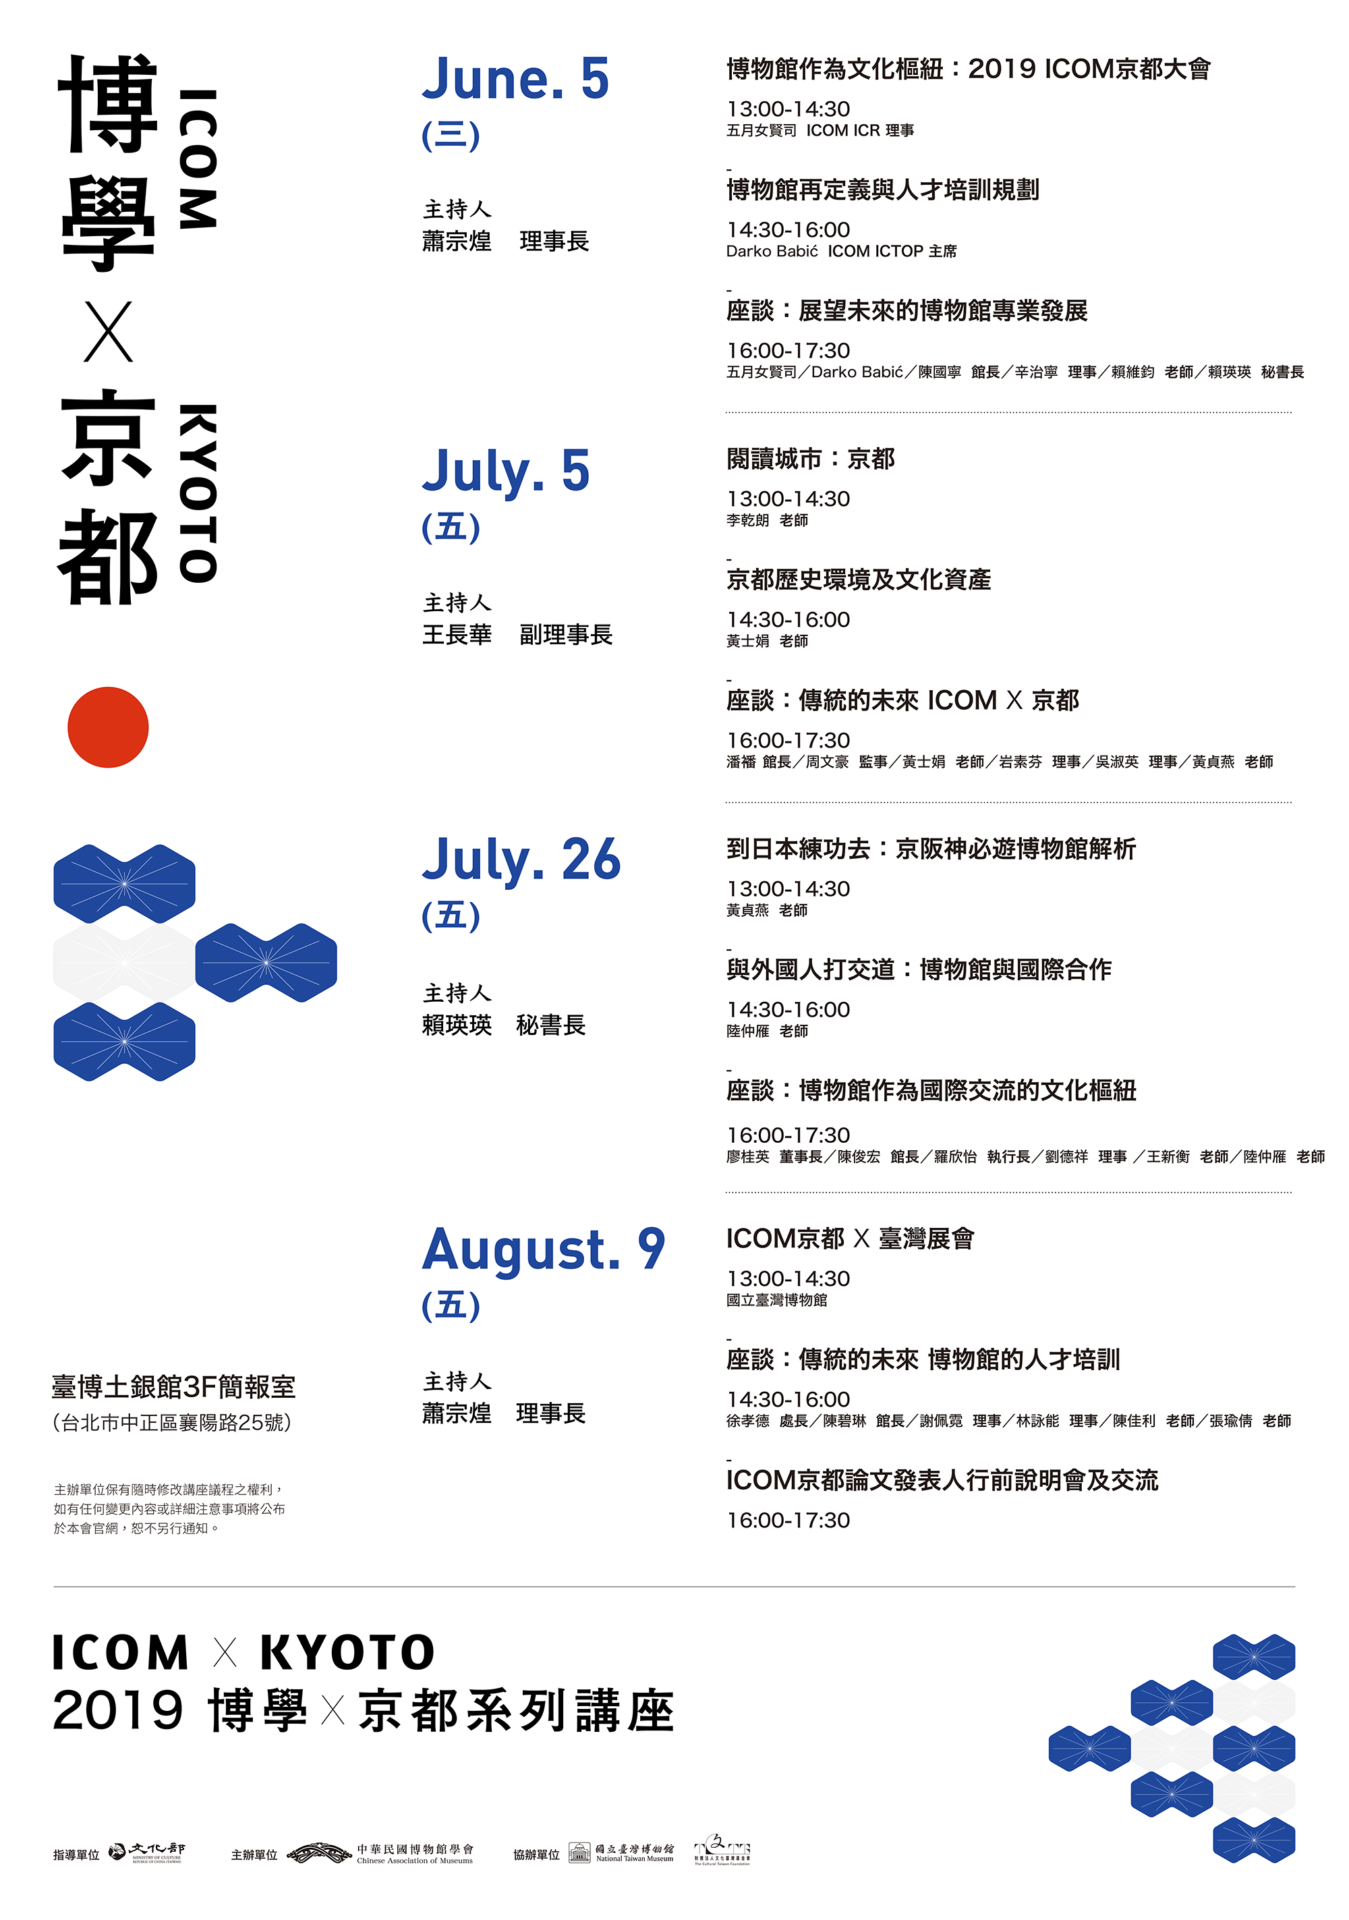 【講座取消公告 】原訂08/09之「博學．京都」系列講座因颱風取消